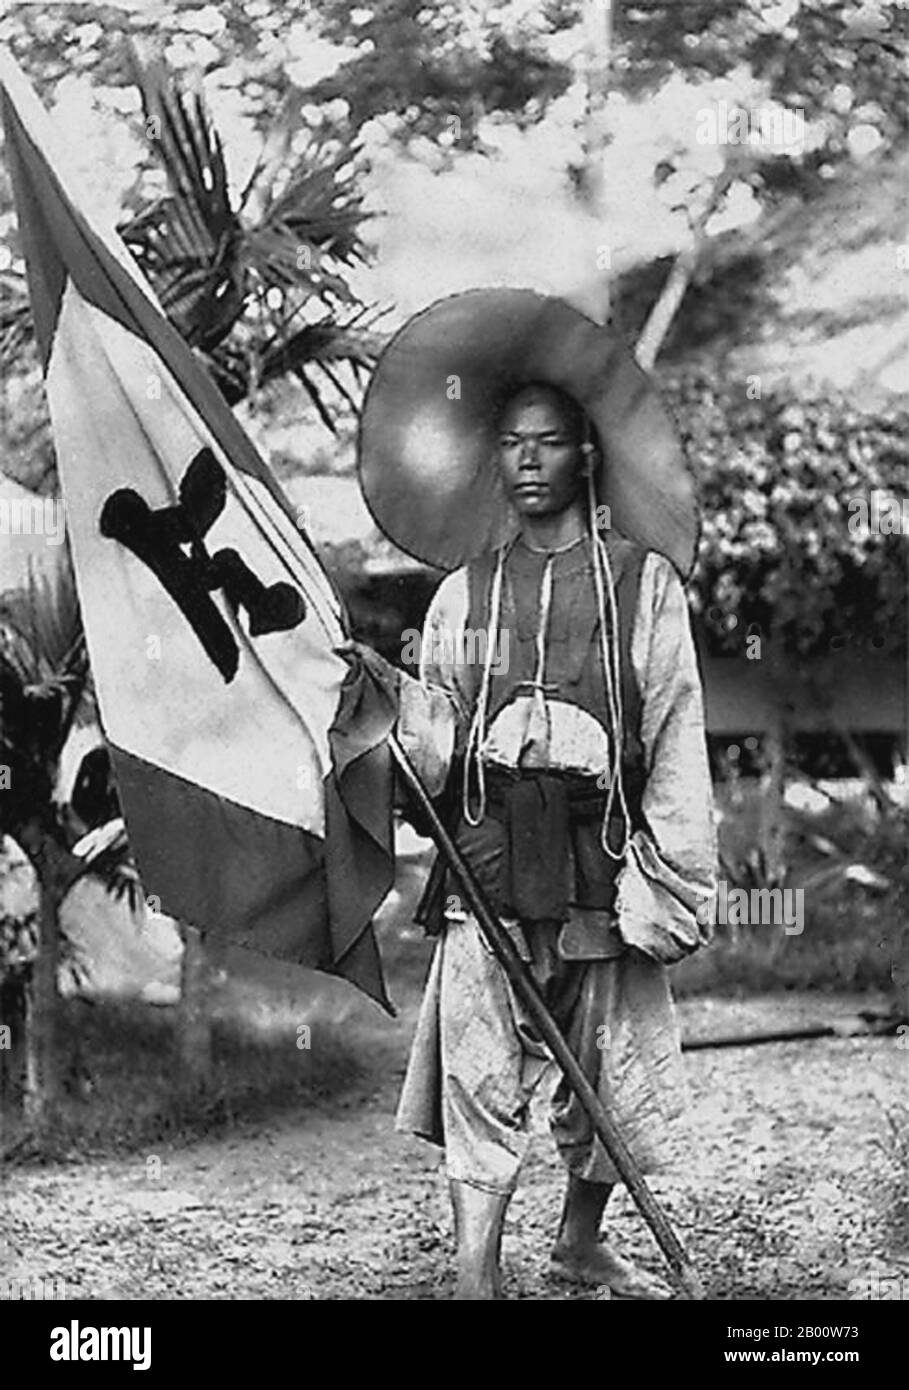 Vietnam: Ein Soldat der Schwarzen Flagge mit dem Banner der Schwarzen Flagge, Tonkin. Foto von Charles-Edouard Hocquard (1853-1911), 1885. Die Armee der Schwarzen Flagge (Chinesisch: Heiqi jun) war ein Überrest einer Banditen-Gruppe, die möglicherweise ehemalige Taiping-Rebellen waren, die 1865 die Grenze von der Provinz Guangxi in Obere Tonkin im Reich Annam (Vietnam) überquerten. Sie wurden vor allem für ihre Kämpfe gegen französische Streitkräfte in Zusammenarbeit mit vietnamesischen und chinesischen Behörden bekannt. Die Armee der Schwarzen Flagge ist so benannt, weil ihr Kommandant Liu Yongfu es vorgezogen hat, schwarze Befehlsflaggen zu verwenden. Stockfoto